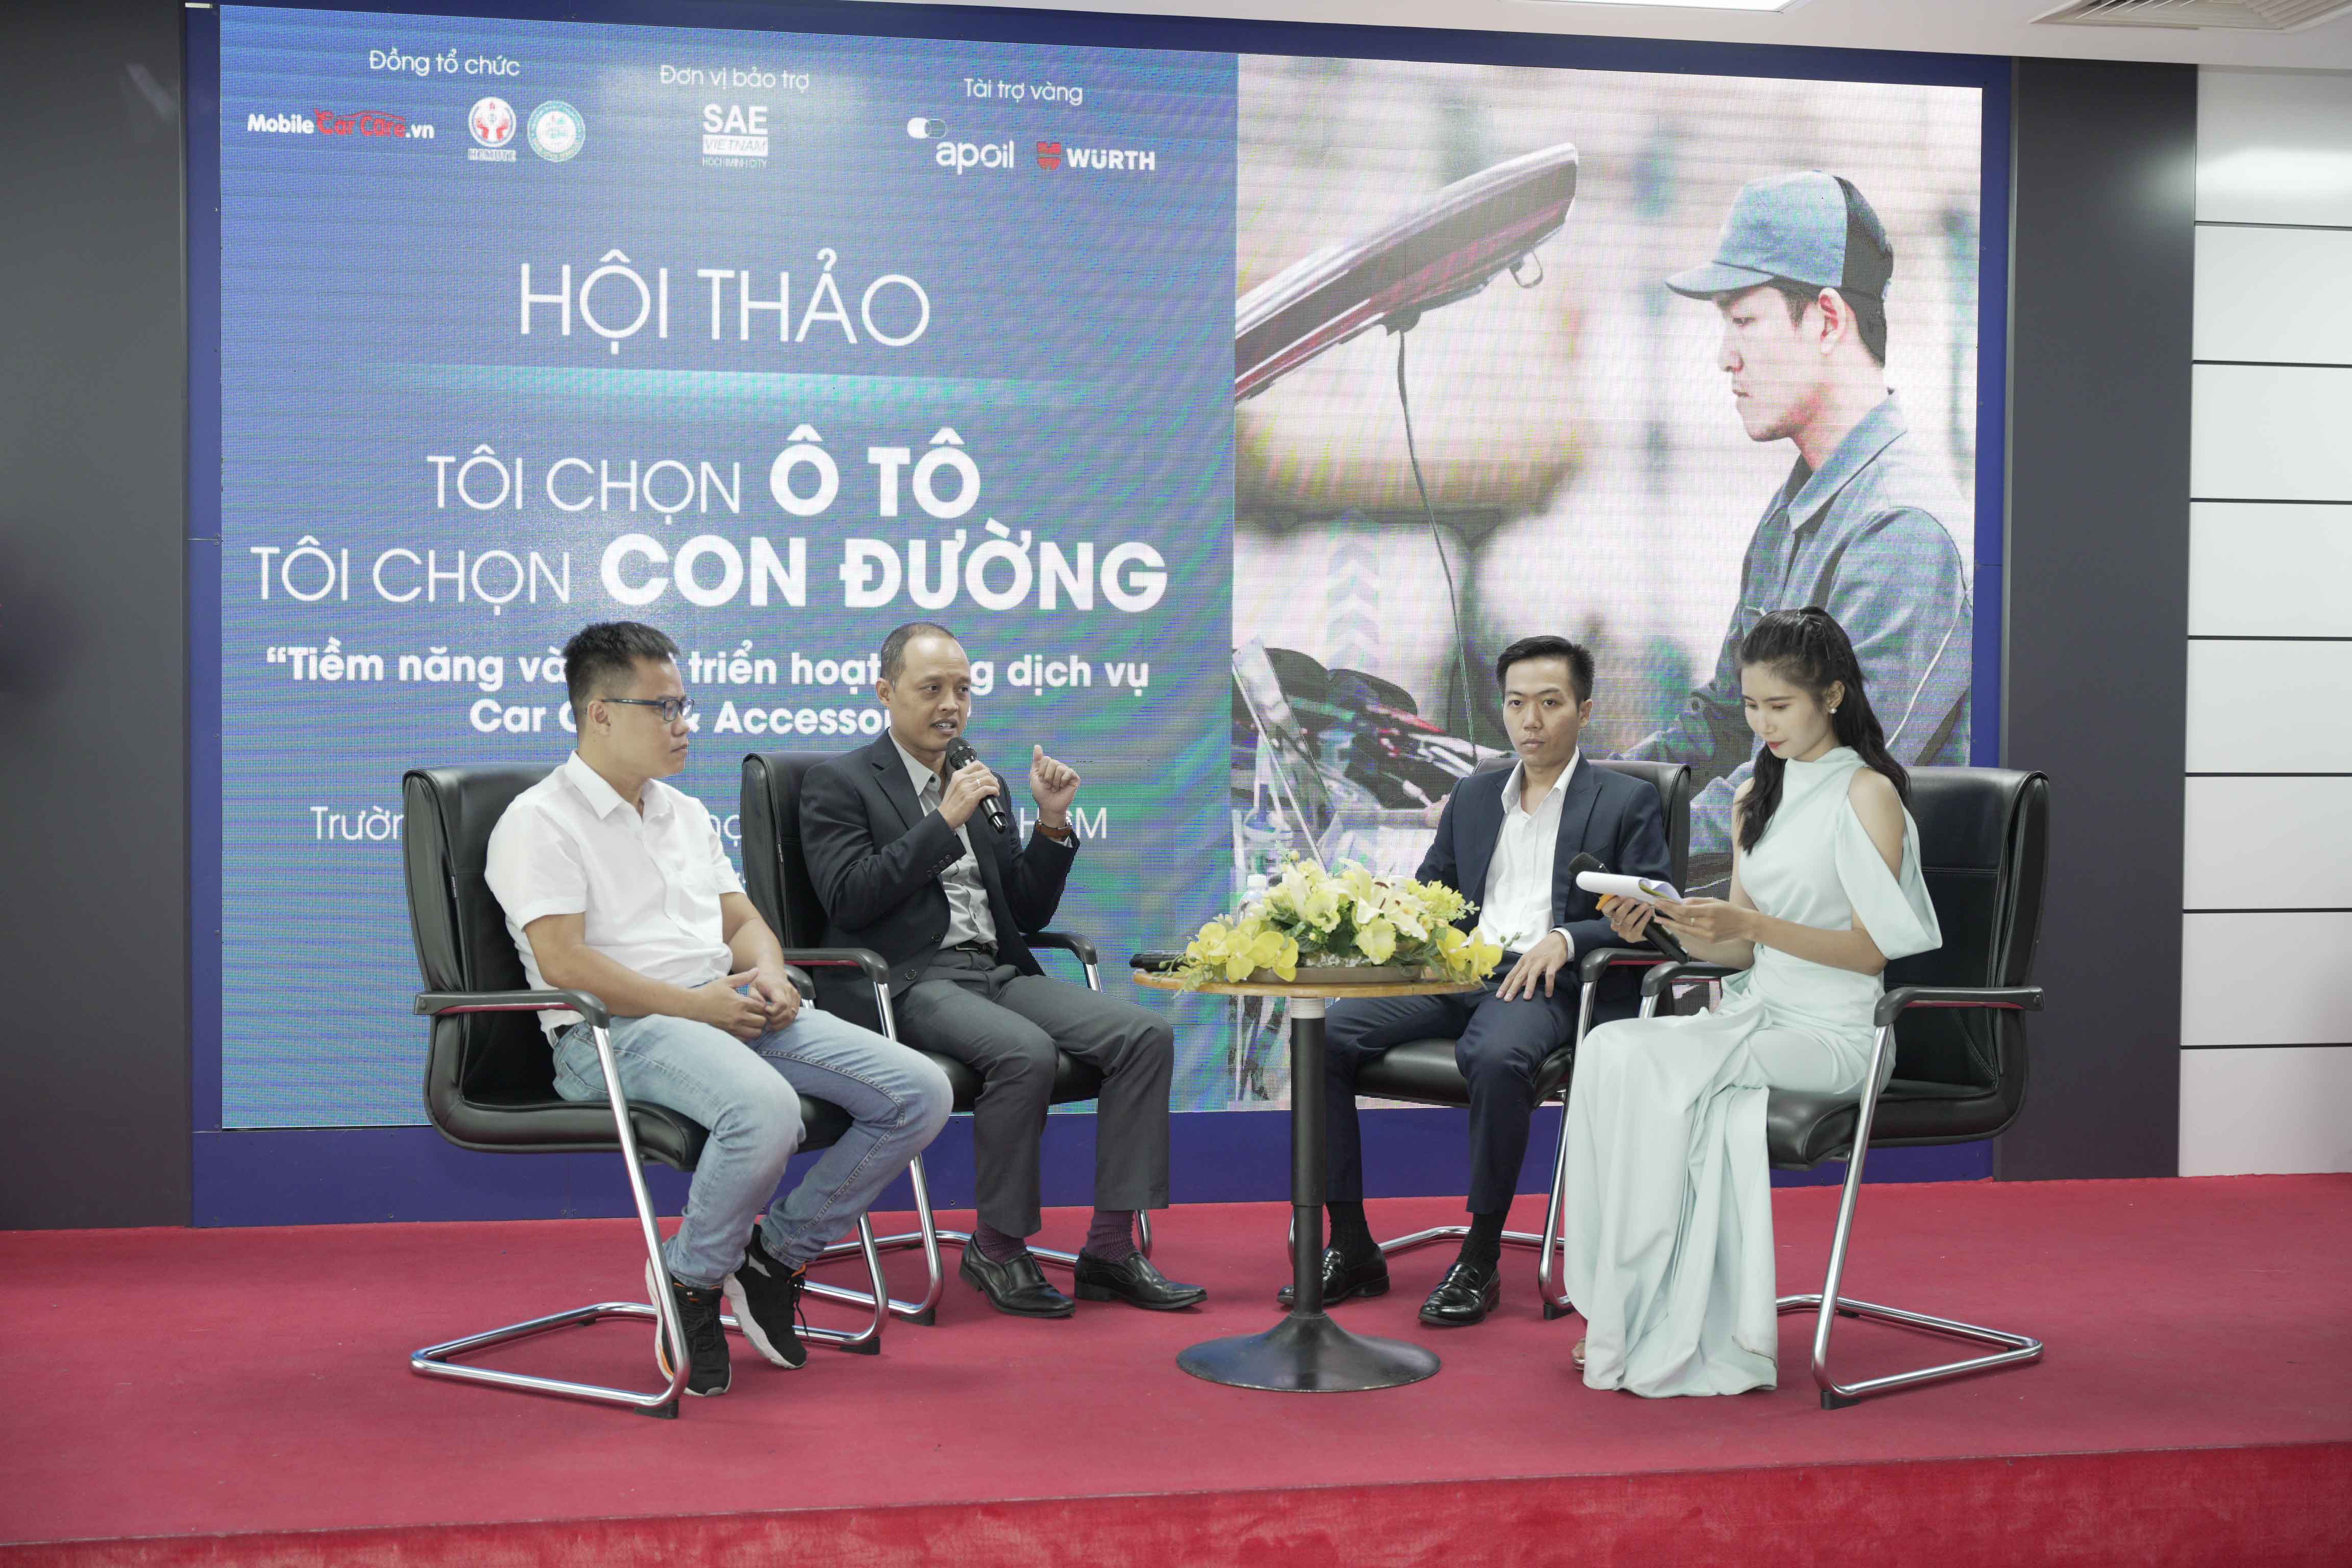 Chương trình Car Service UniTour lần thứ 4 vừa diễn ra tại Sài Gòn Hoi thao Toi chon  o to.JPG